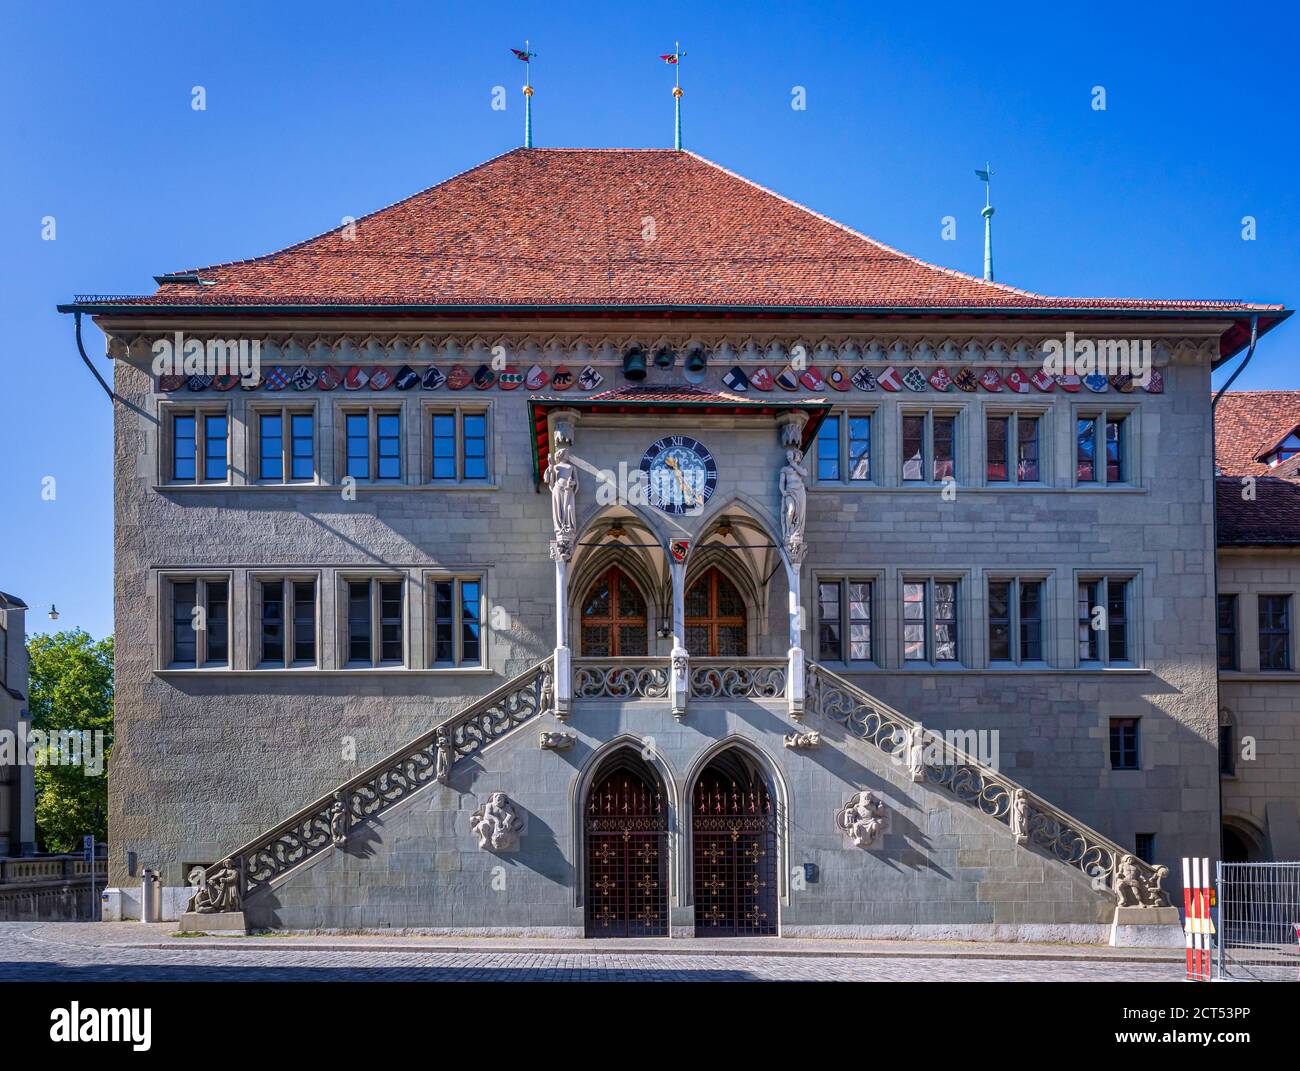 The town hall of Bern, Bern, Switzerland Stock Photo